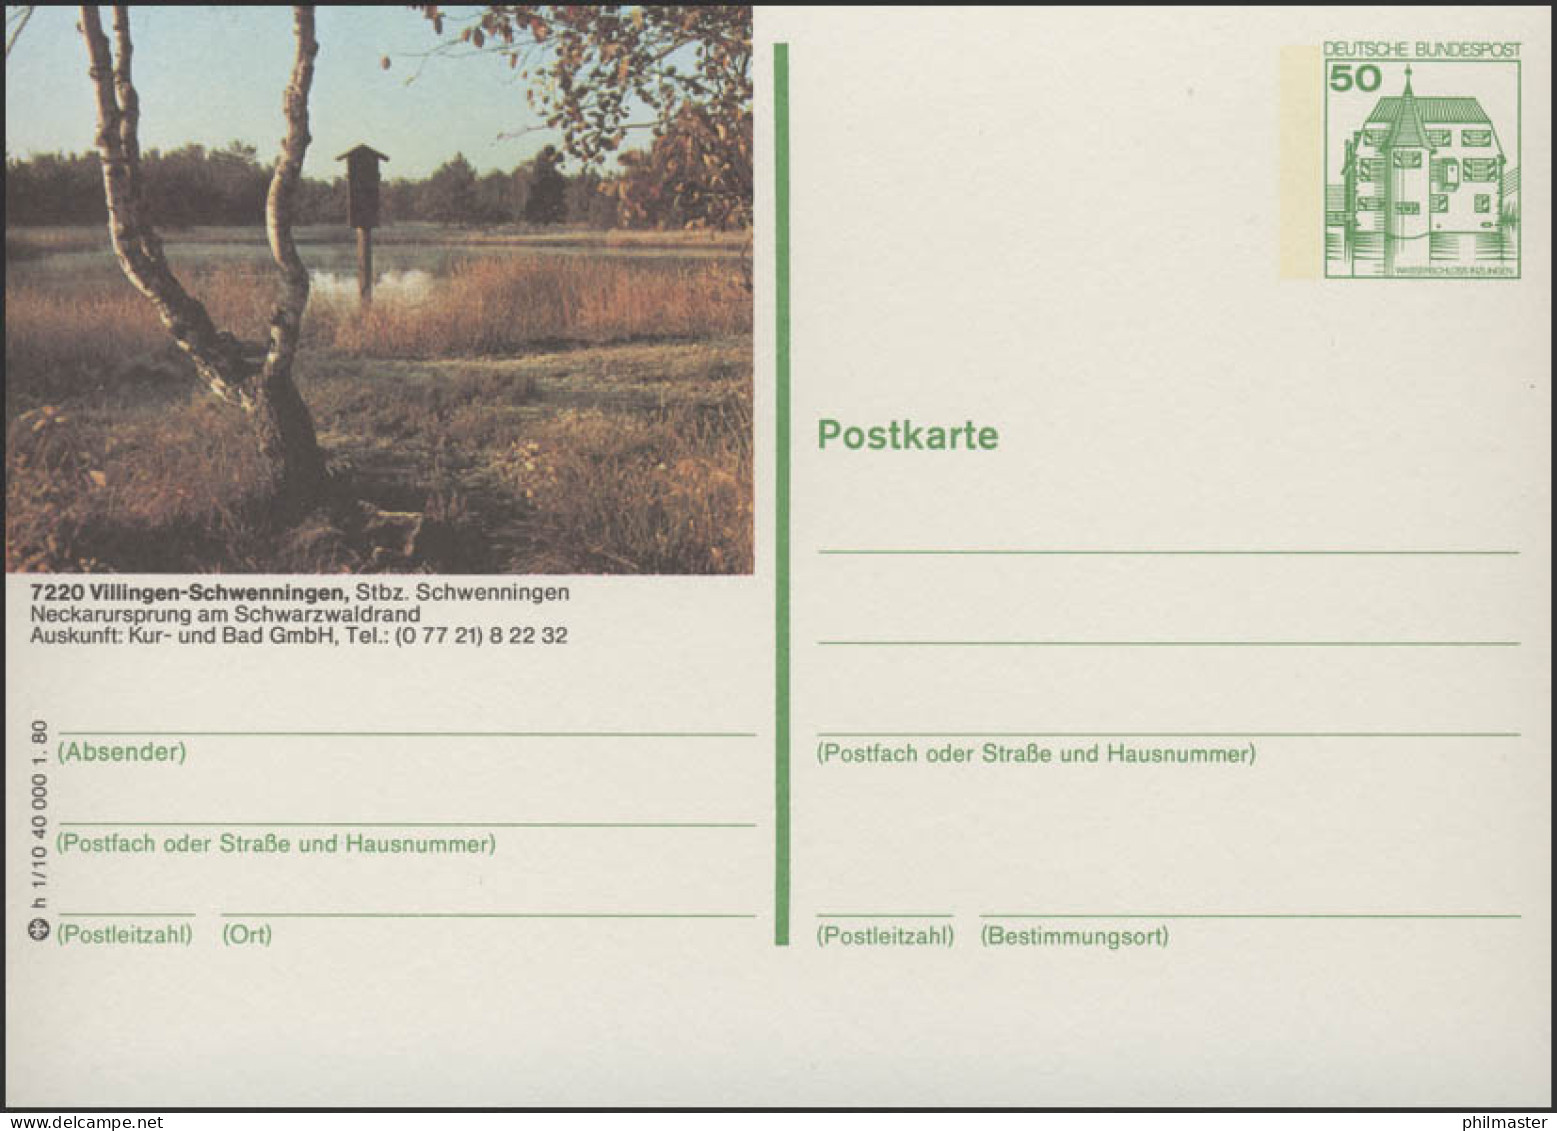 P130-h1/010 - 7730 Villingen-Schwennigen, ** - Geïllustreerde Postkaarten - Ongebruikt